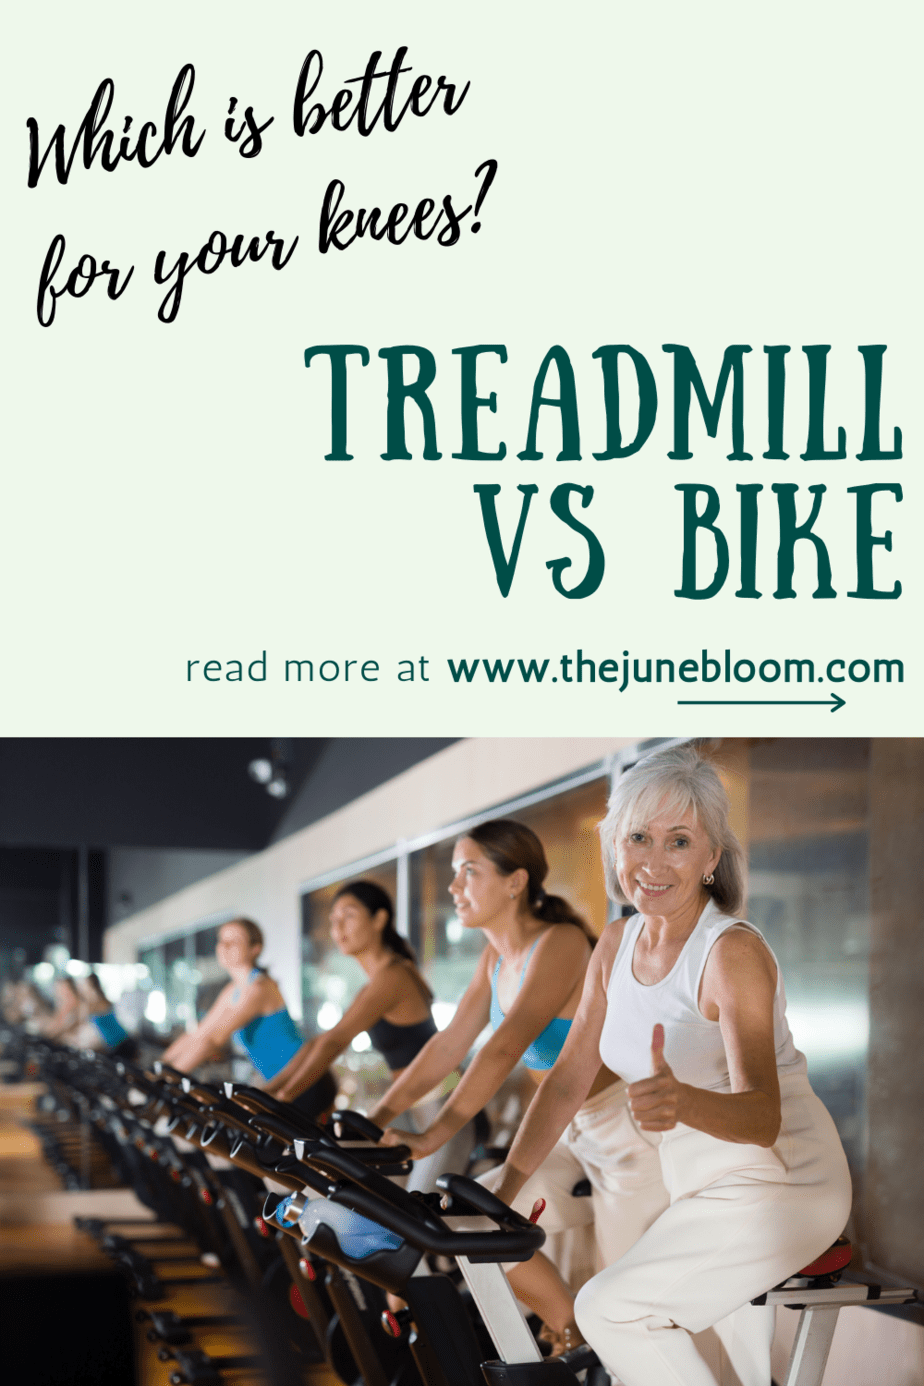 Bike vs Treadmill for knees